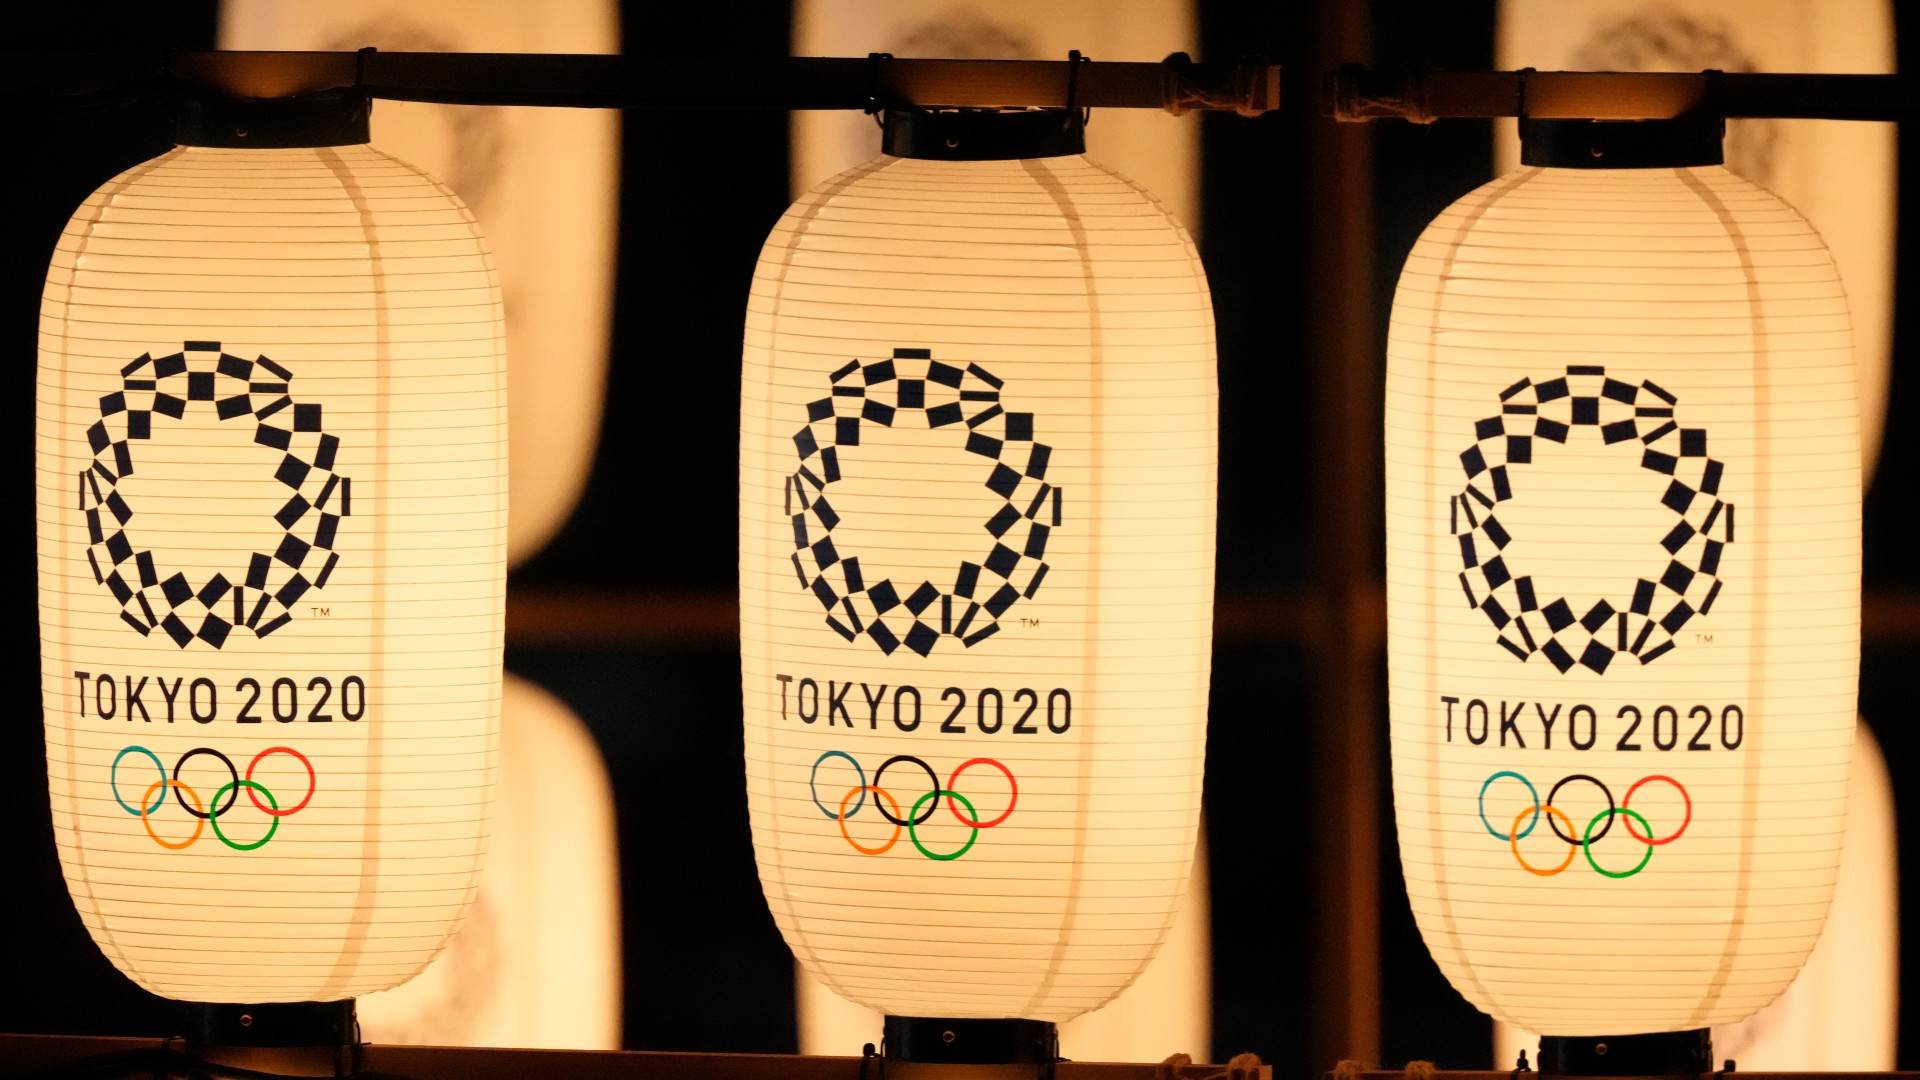 Laternas com o logo das Olimpíadas iluminam a cerimônia de abertura dos Jogos